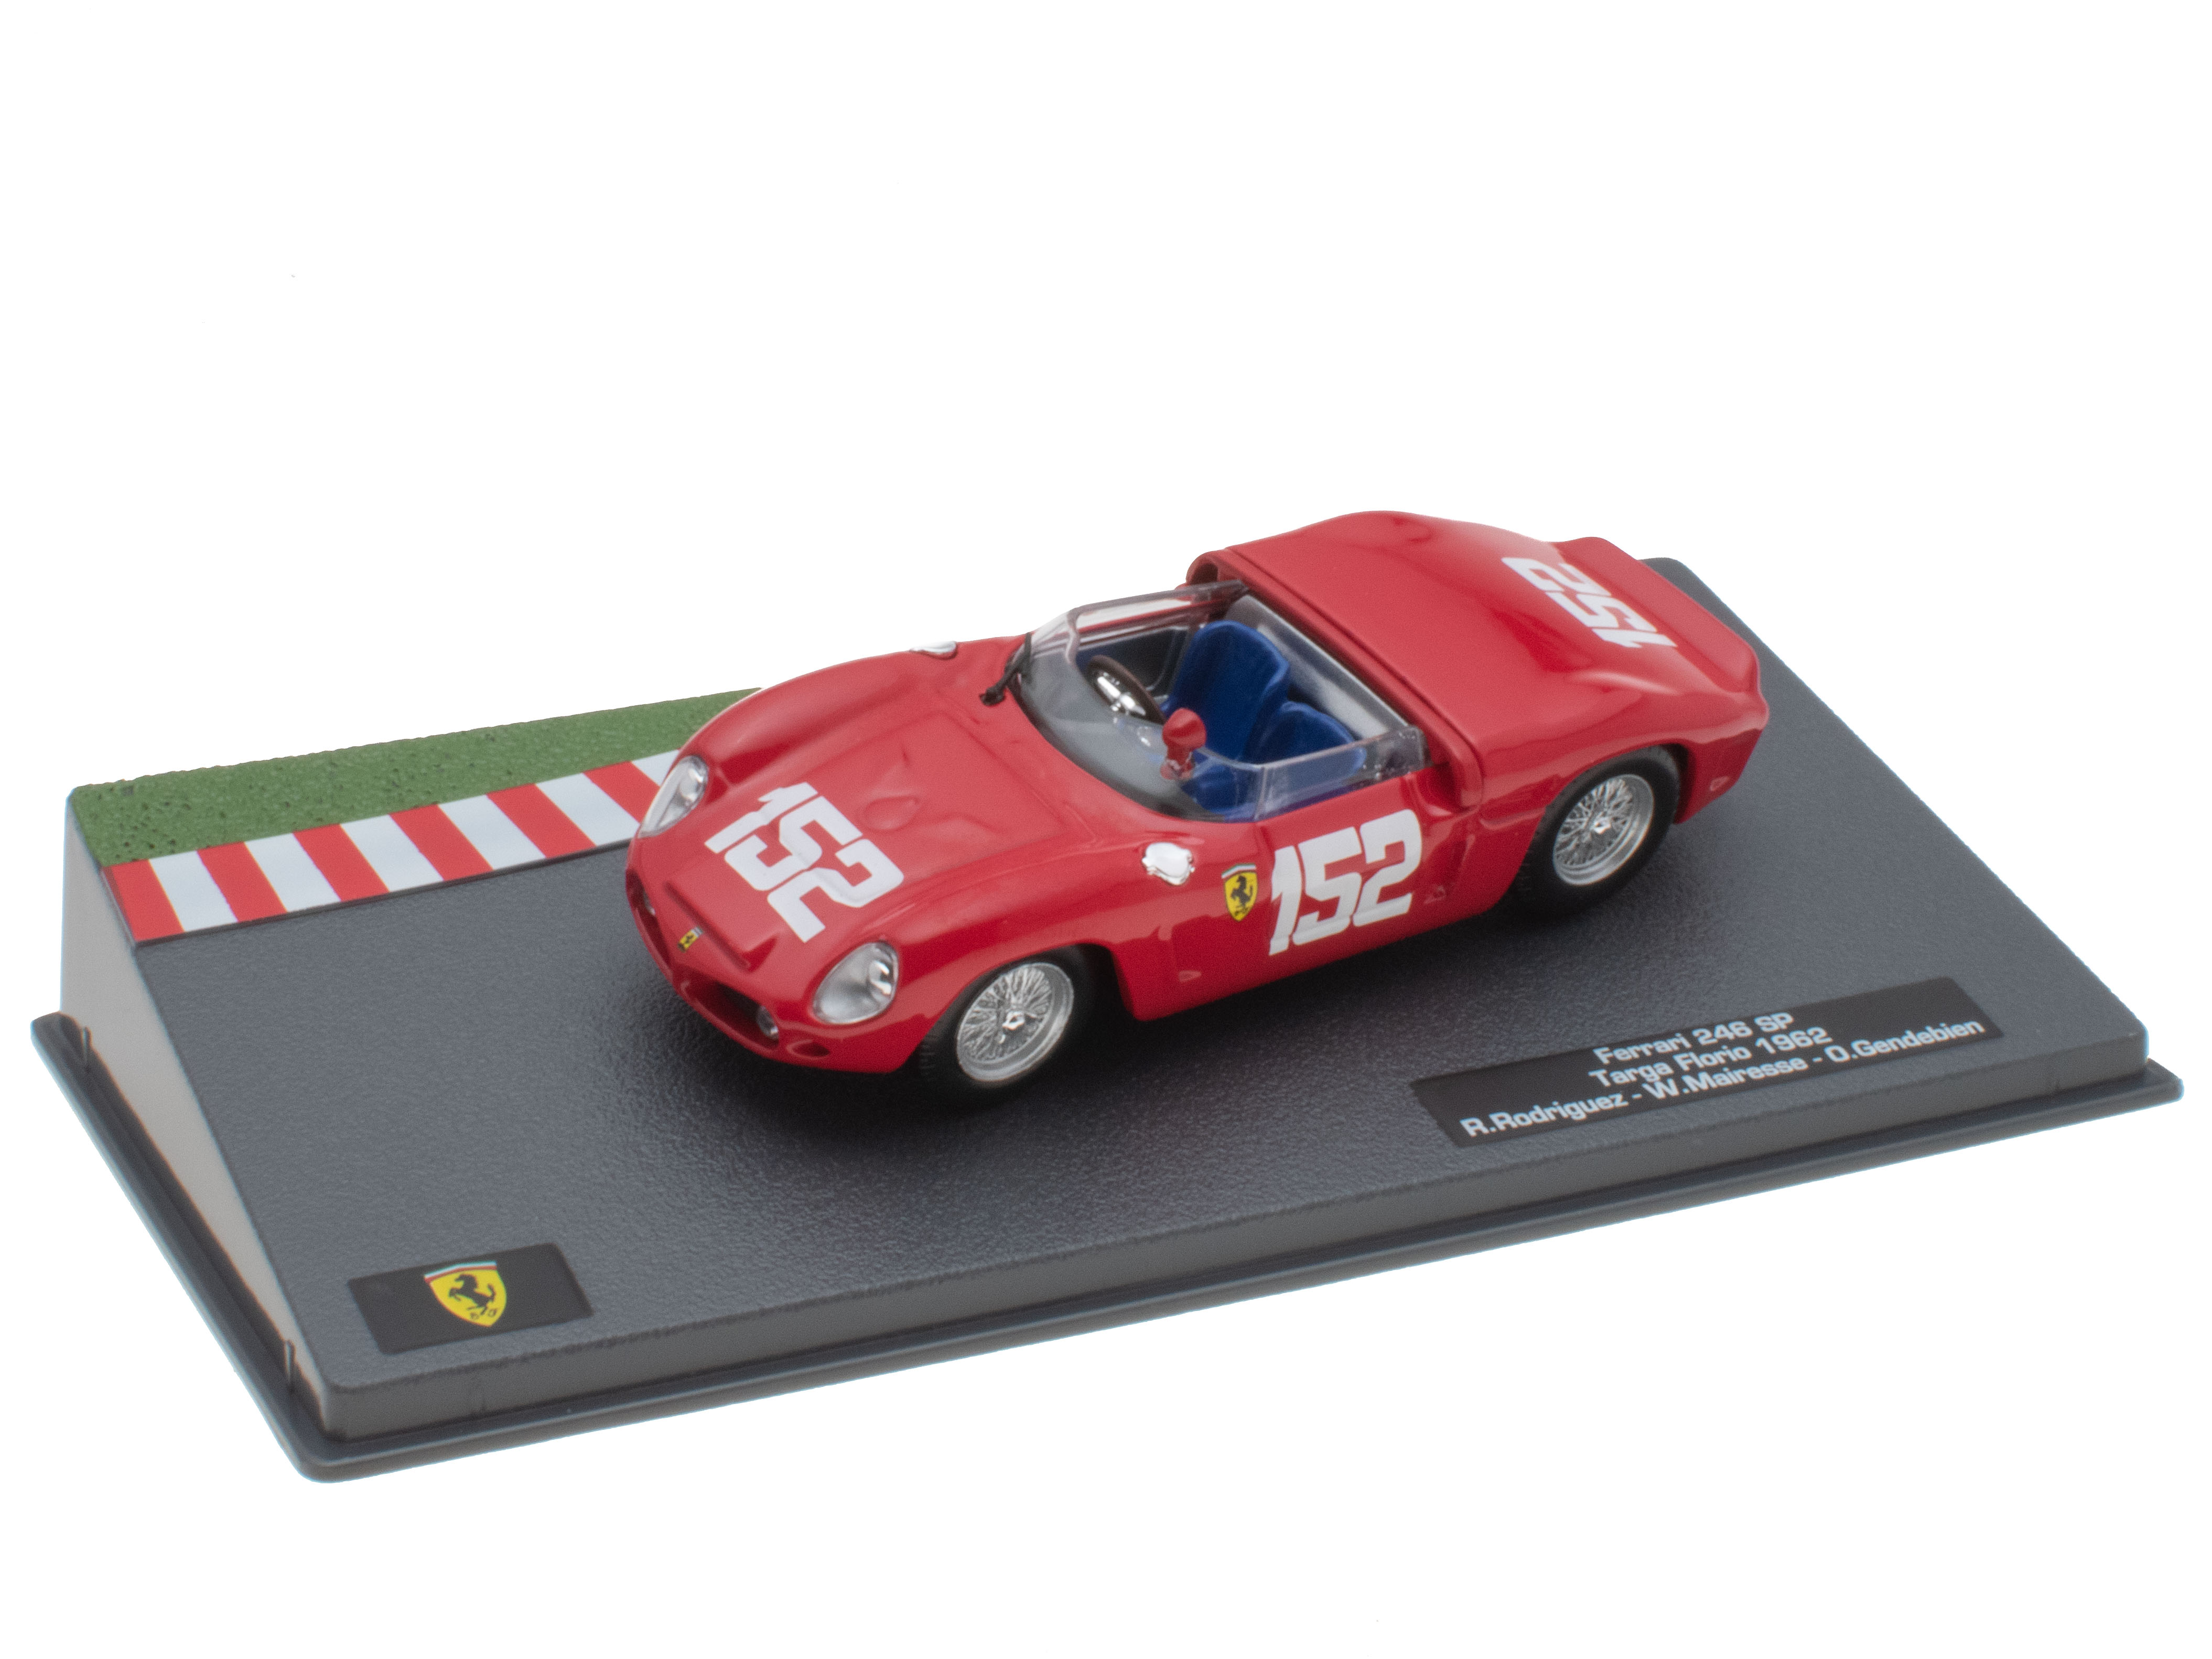 Ferrari 246 SP - Targa Florio 1962